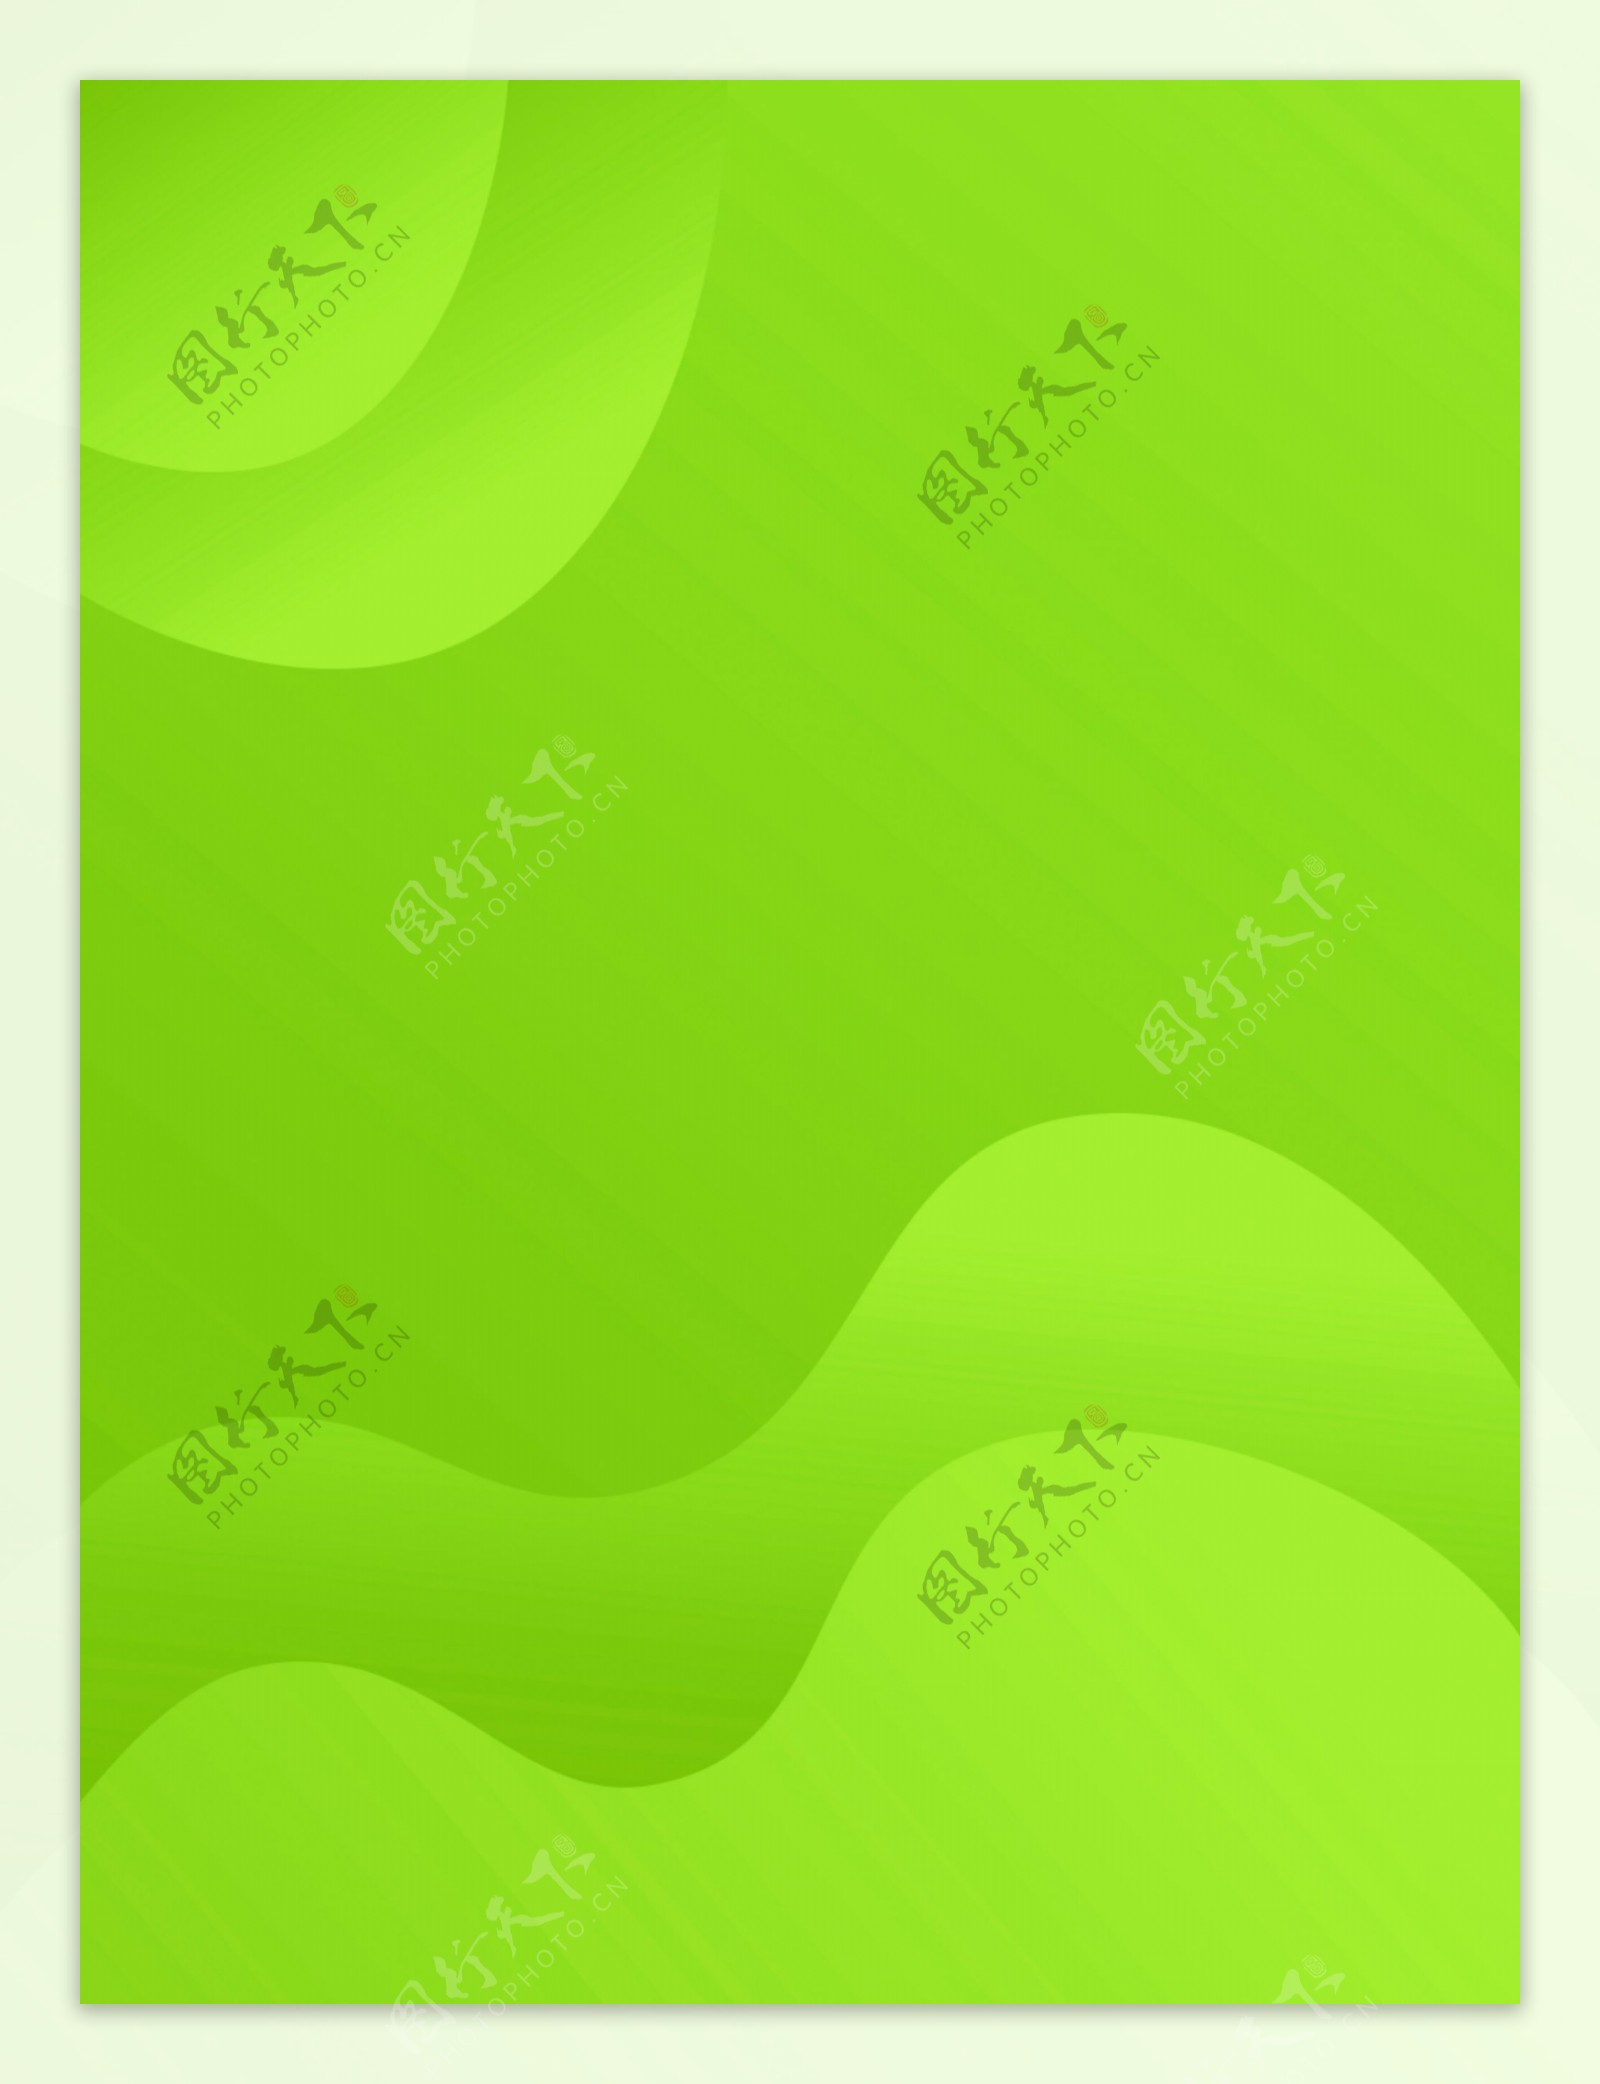 绿色现代时尚波浪流体背景图